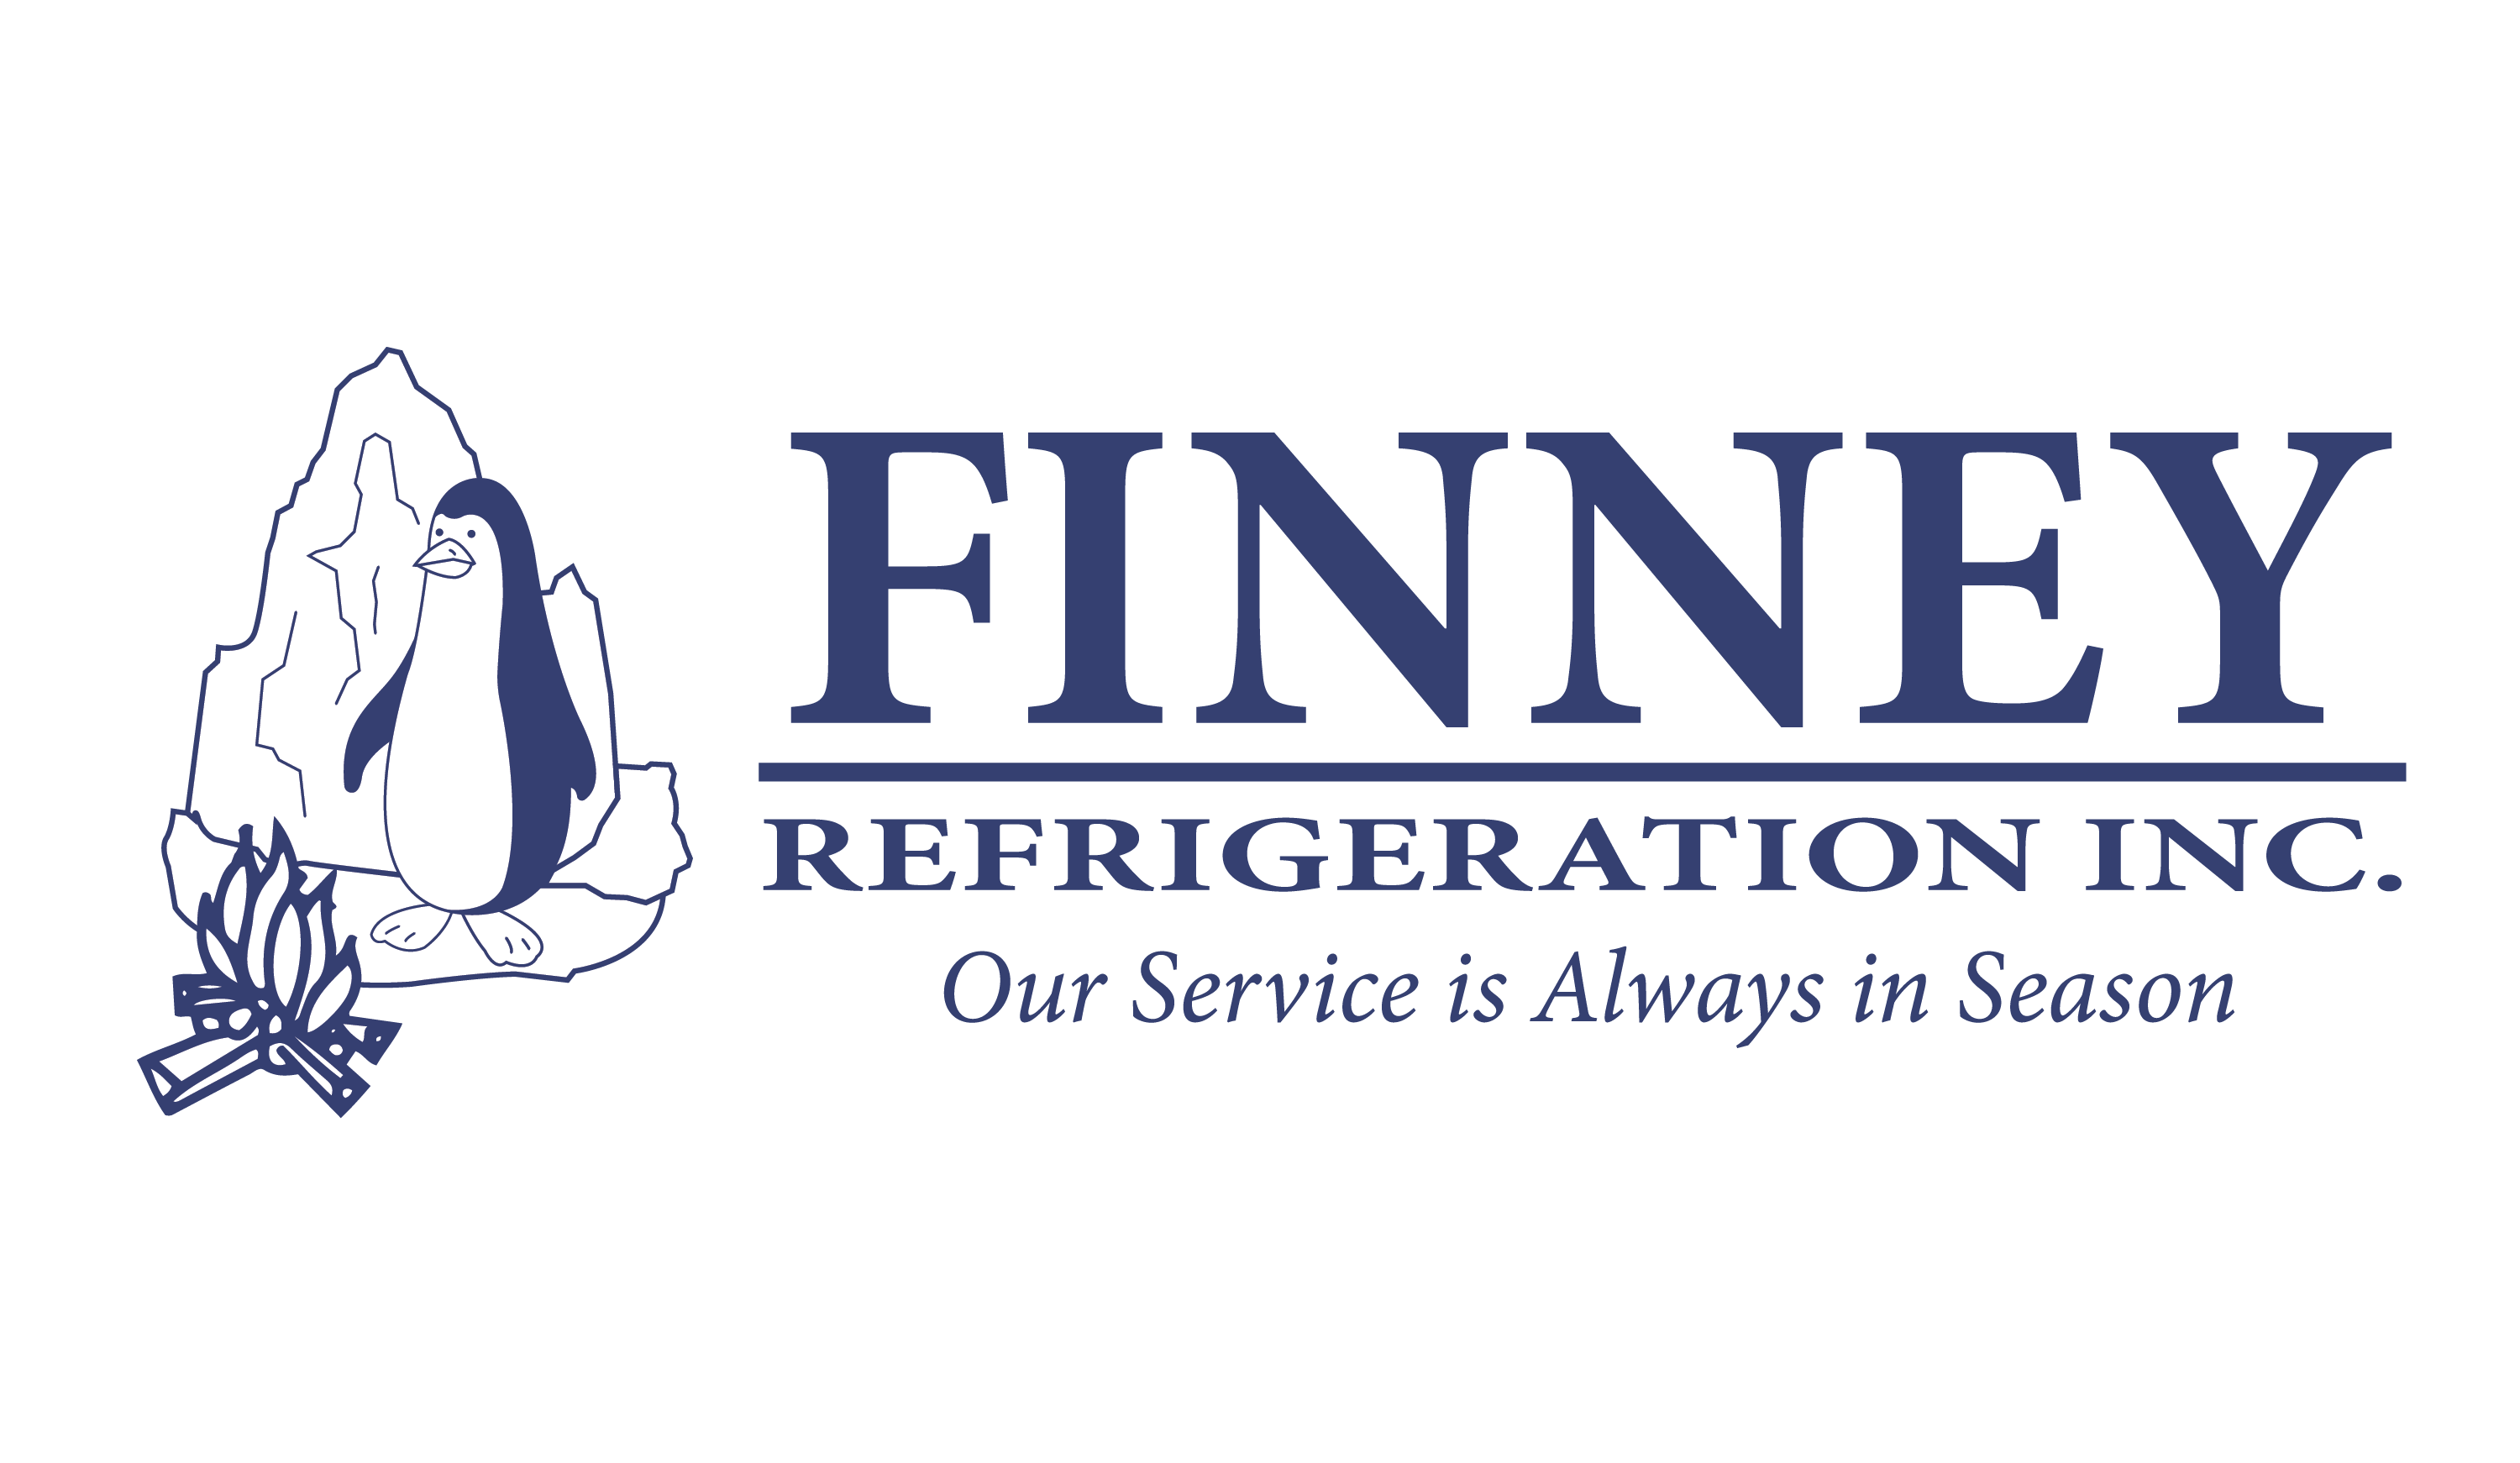 Finney Refrigeration, Inc